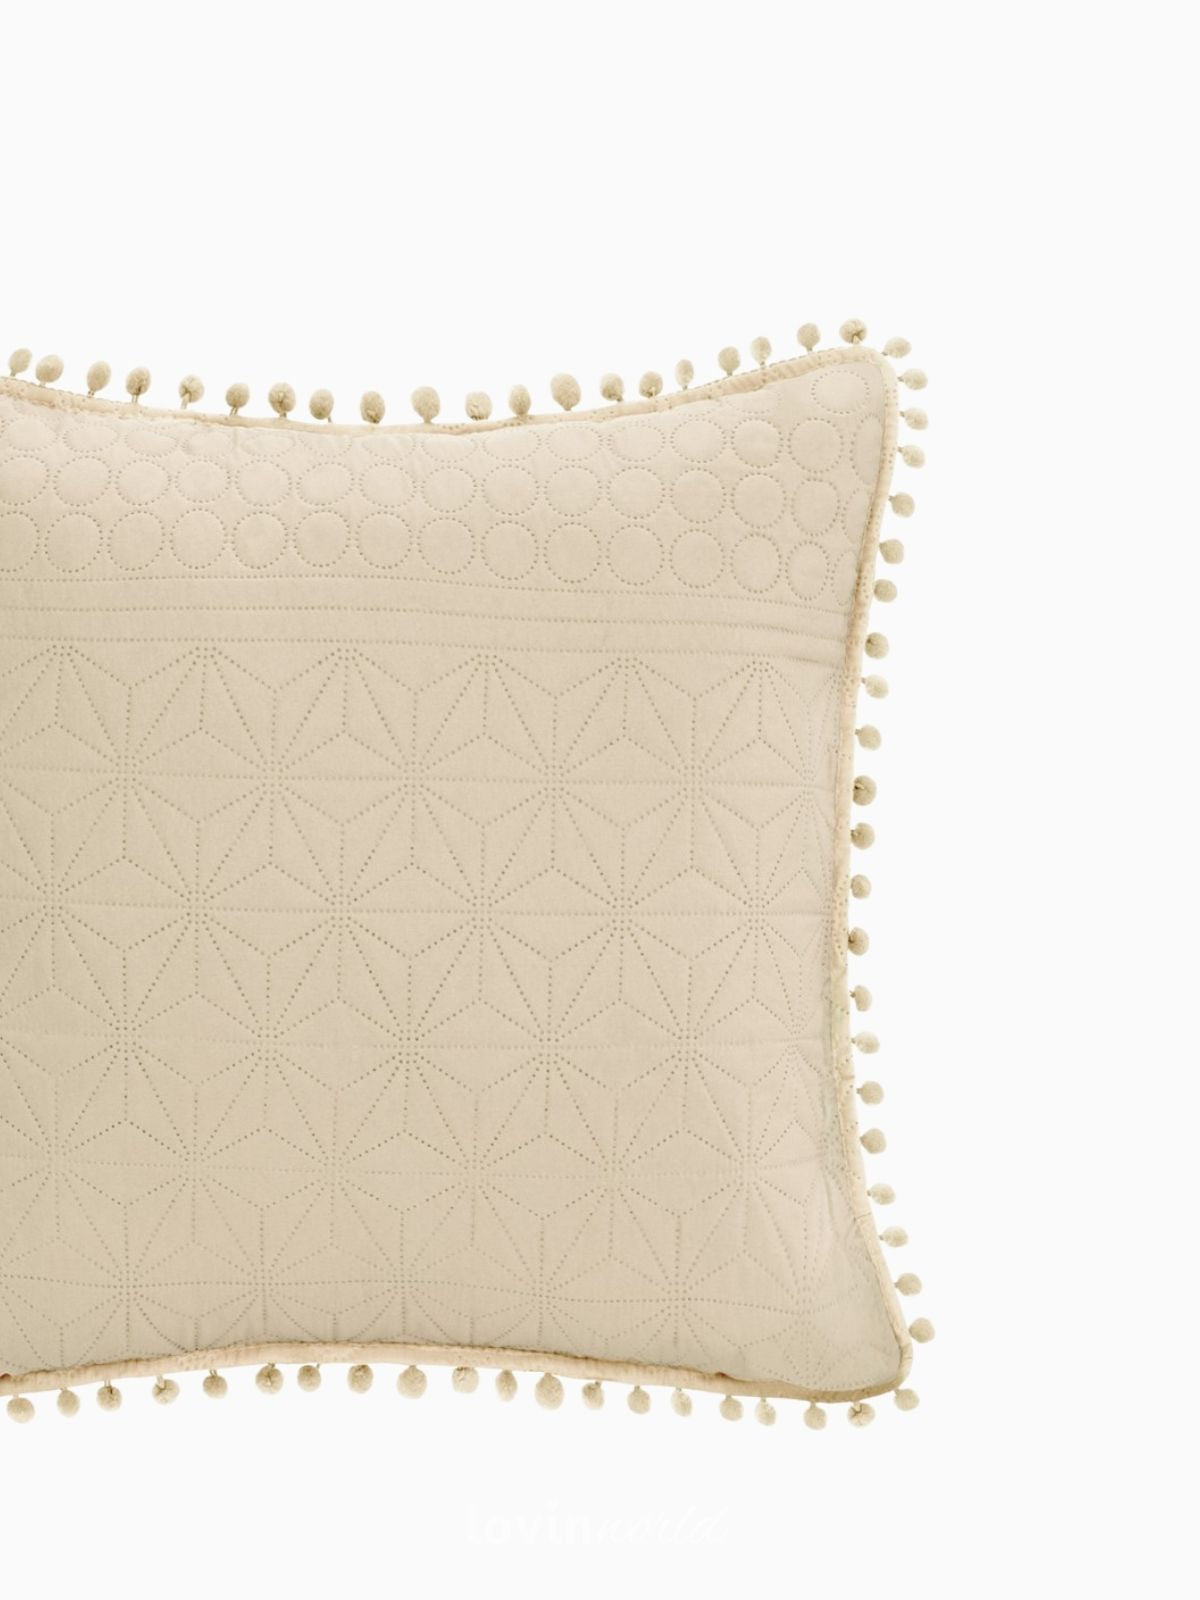 Cuscino decorativo Meadore in colore beige 45x45 cm.-2